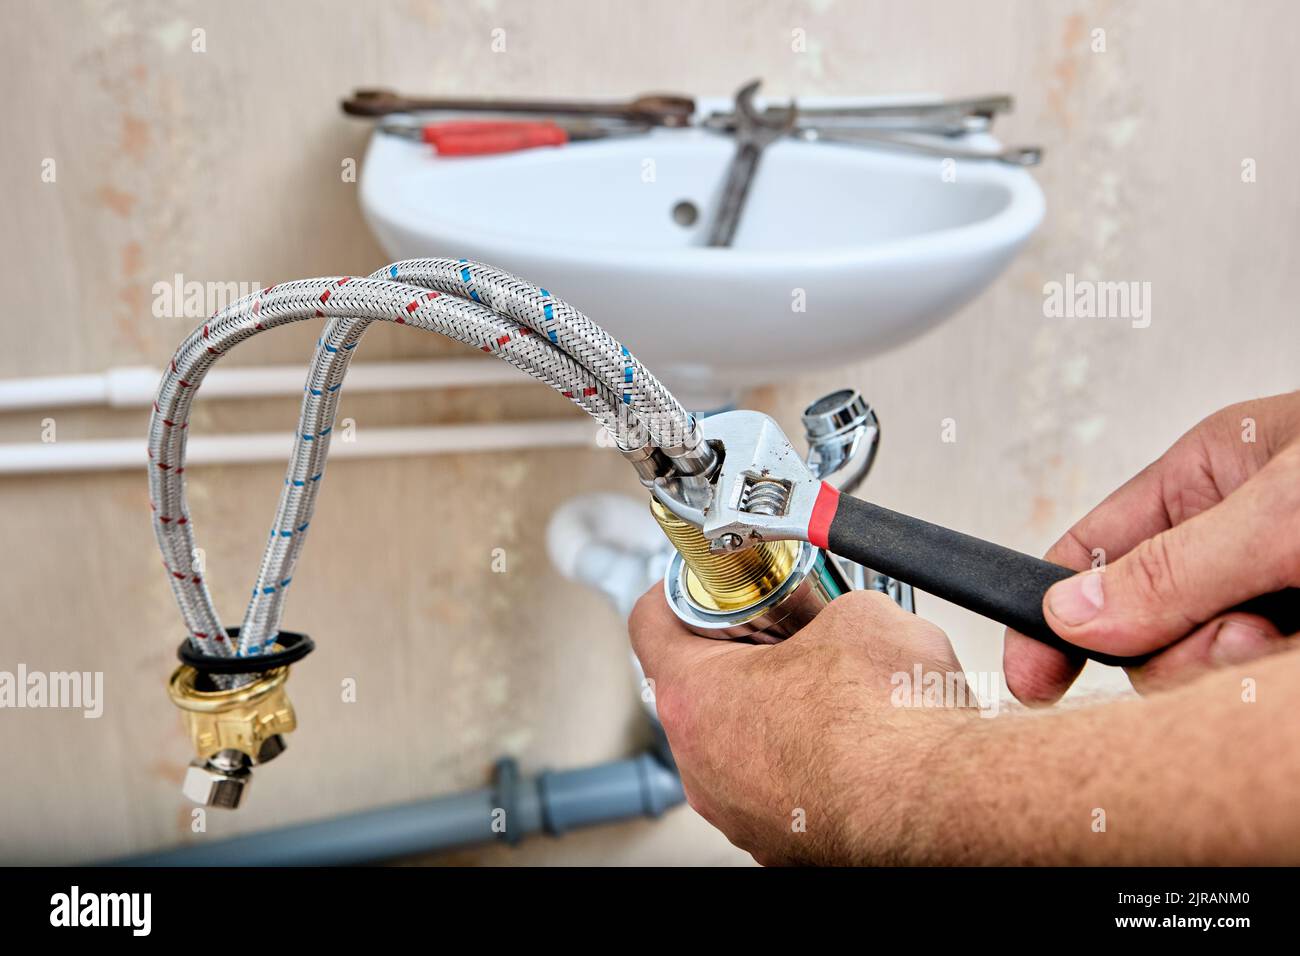 Le plombier fixe le tuyau de raccordement tressé au robinet d'eau avant d' installer le robinet sur l'évier de la salle de bains Photo Stock - Alamy